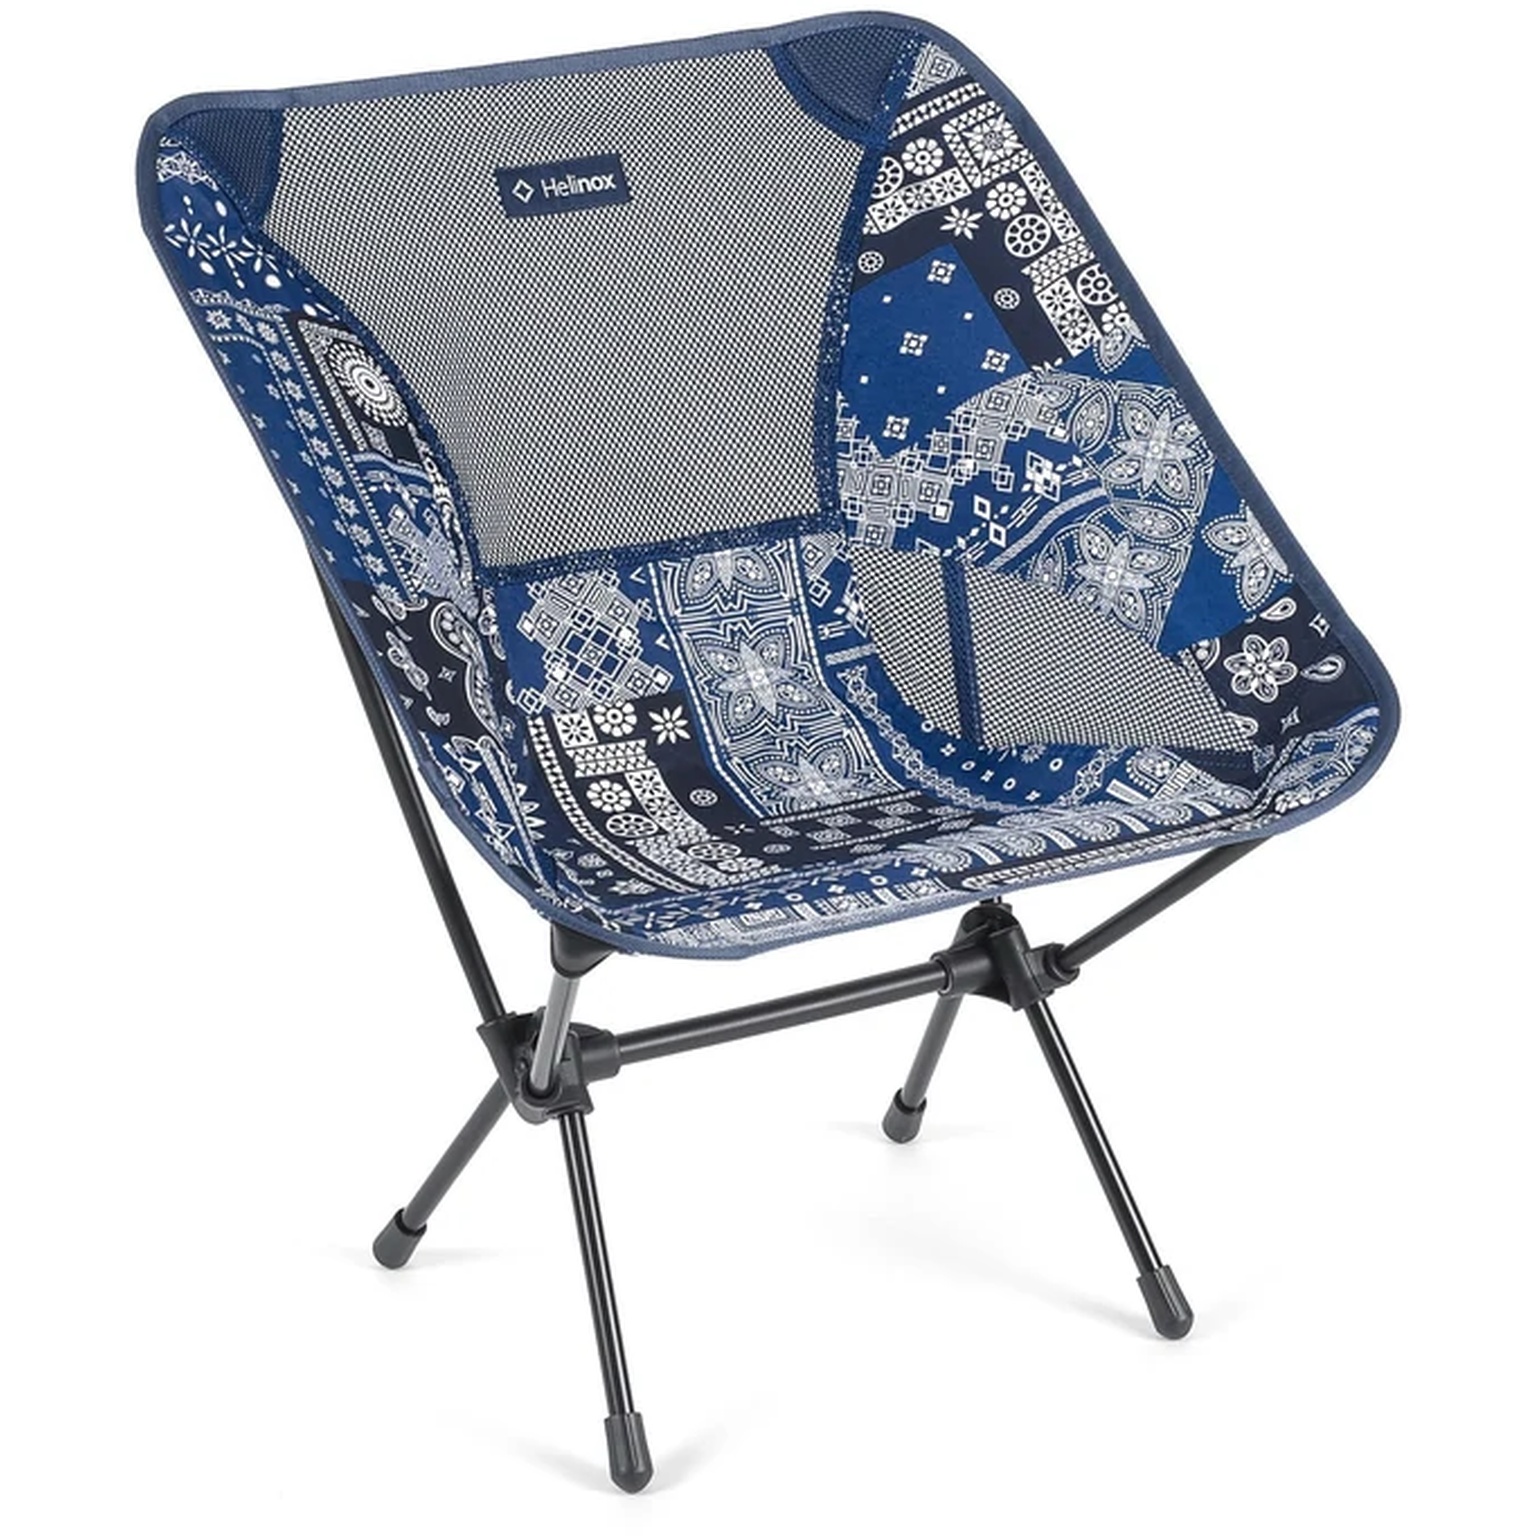 Produktbild von Helinox Chair One Campingstuhl - blue bandanna quilt - black